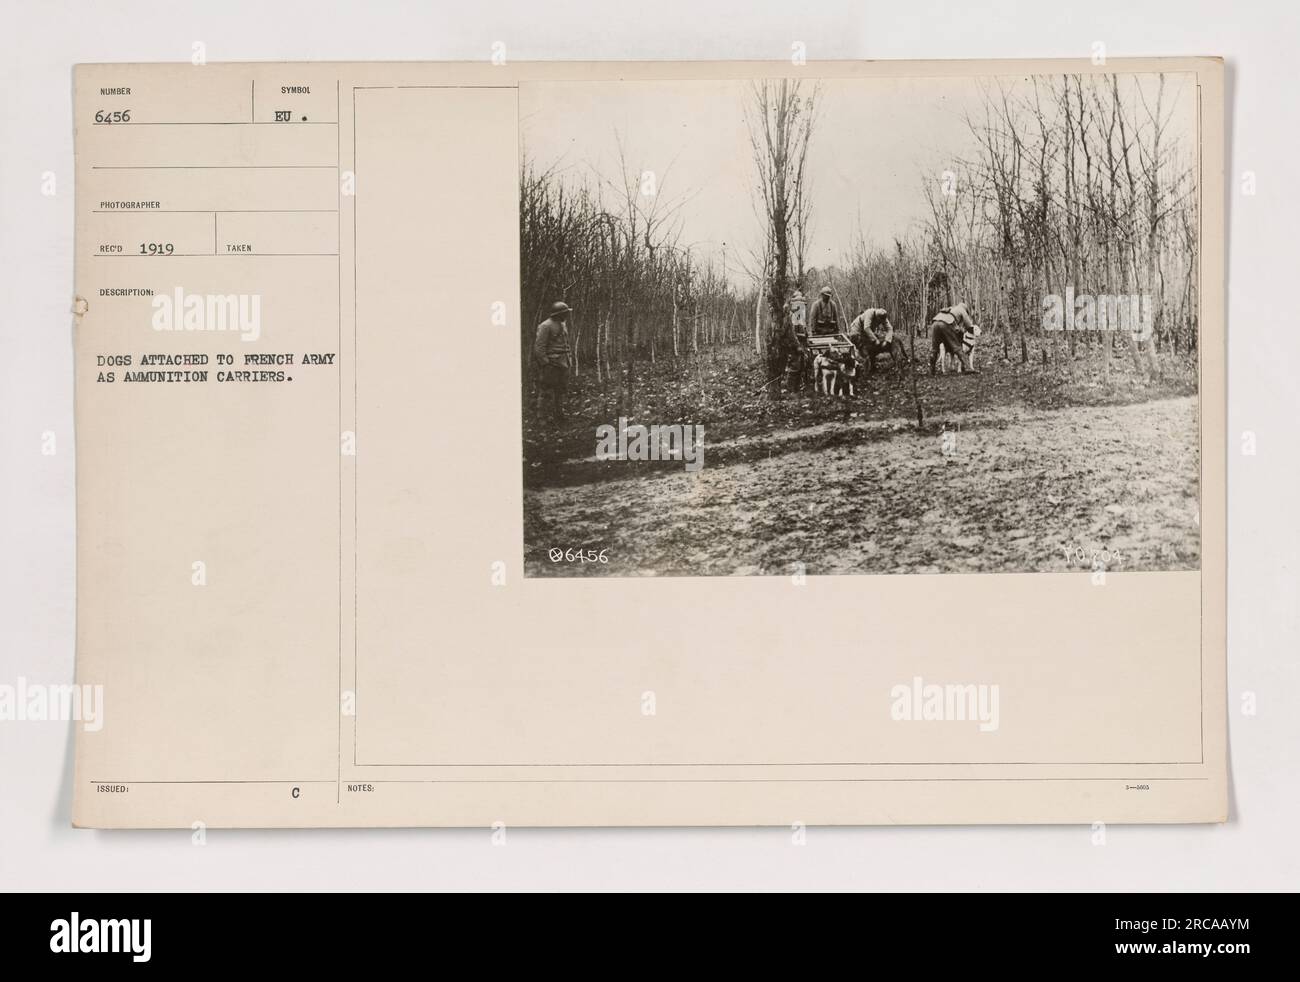 I cani dell'esercito francese sono visti attaccati ai portamunizioni in questa fotografia scattata nel 1919. Furono addestrati per assistere nel trasporto di munizioni per operazioni militari. Per gentile concessione di National Archives and Records Administration, ID 111-SC-6456. Foto Stock